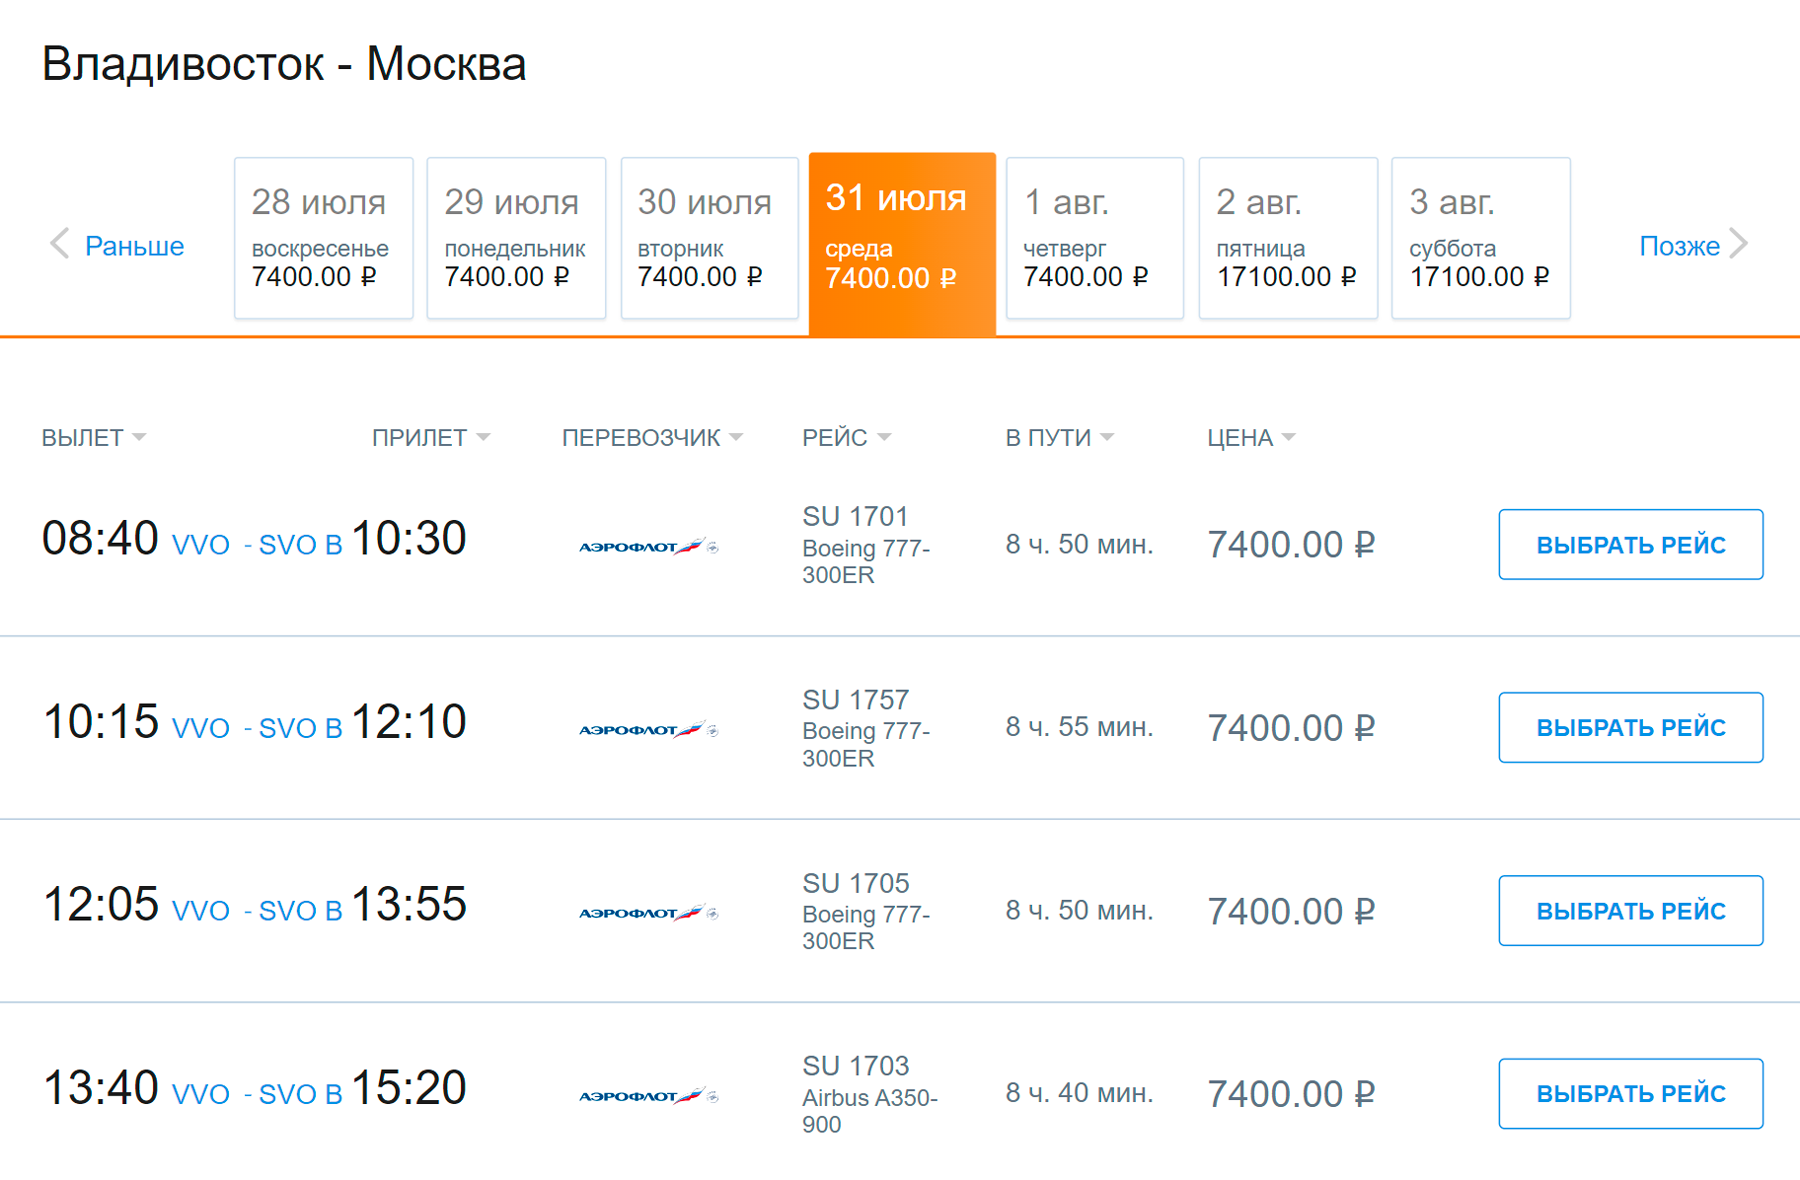 Субсидируемый билет для пассажира с инвалидностью или другого льготника, кроме зарегистрированных в ДФО, Калининградской области и детей с путевкой в центр «Океан», стоит еще дешевле: 7400 ₽. Источник: aeroflot.ru